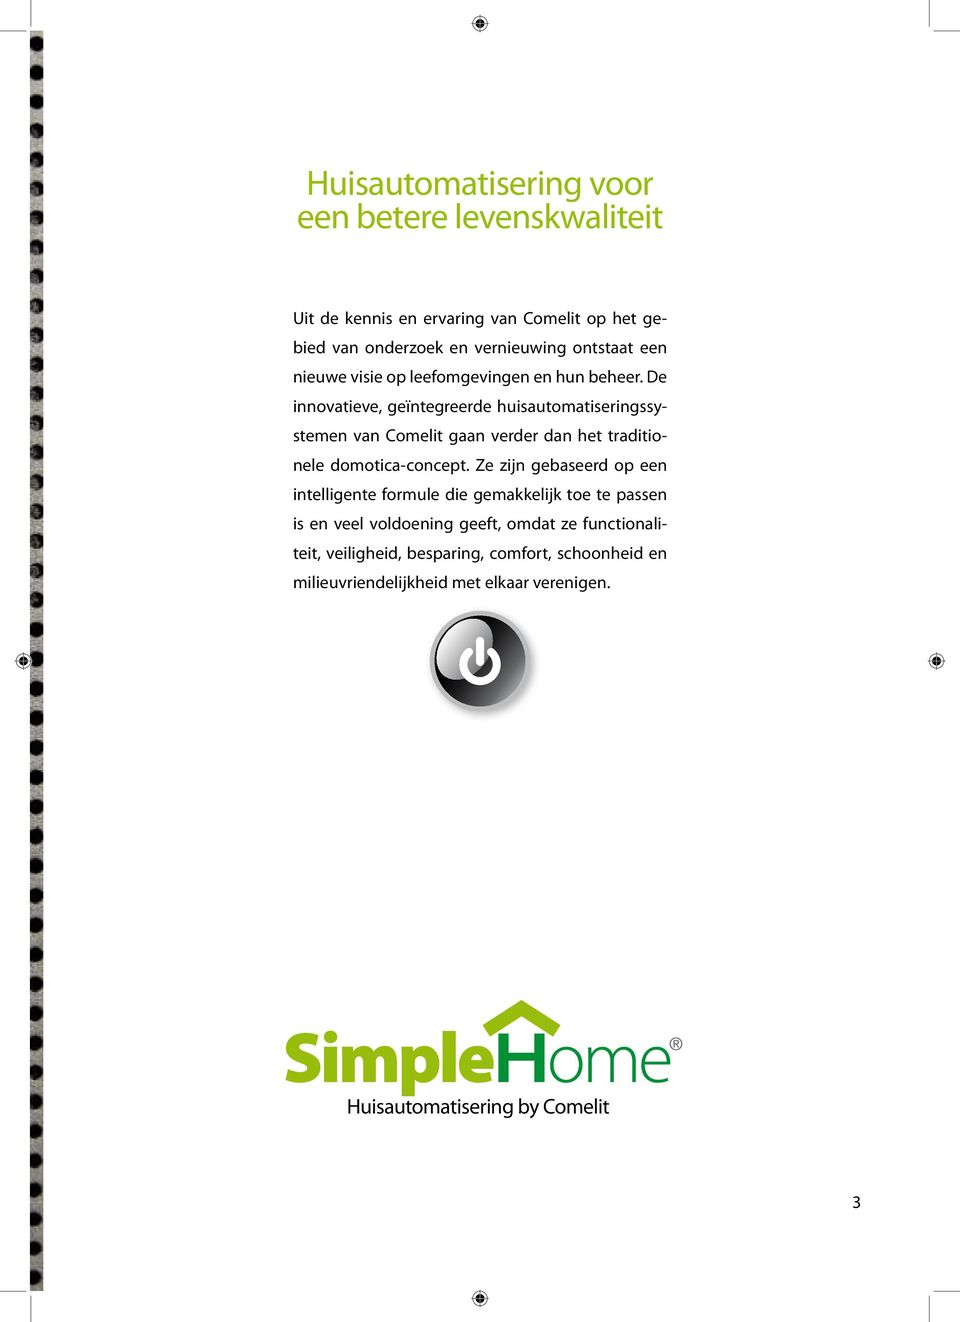 De innovatieve, geïntegreerde huisautomatiseringssystemen van Comelit gaan verder dan het traditionele domotica-concept.